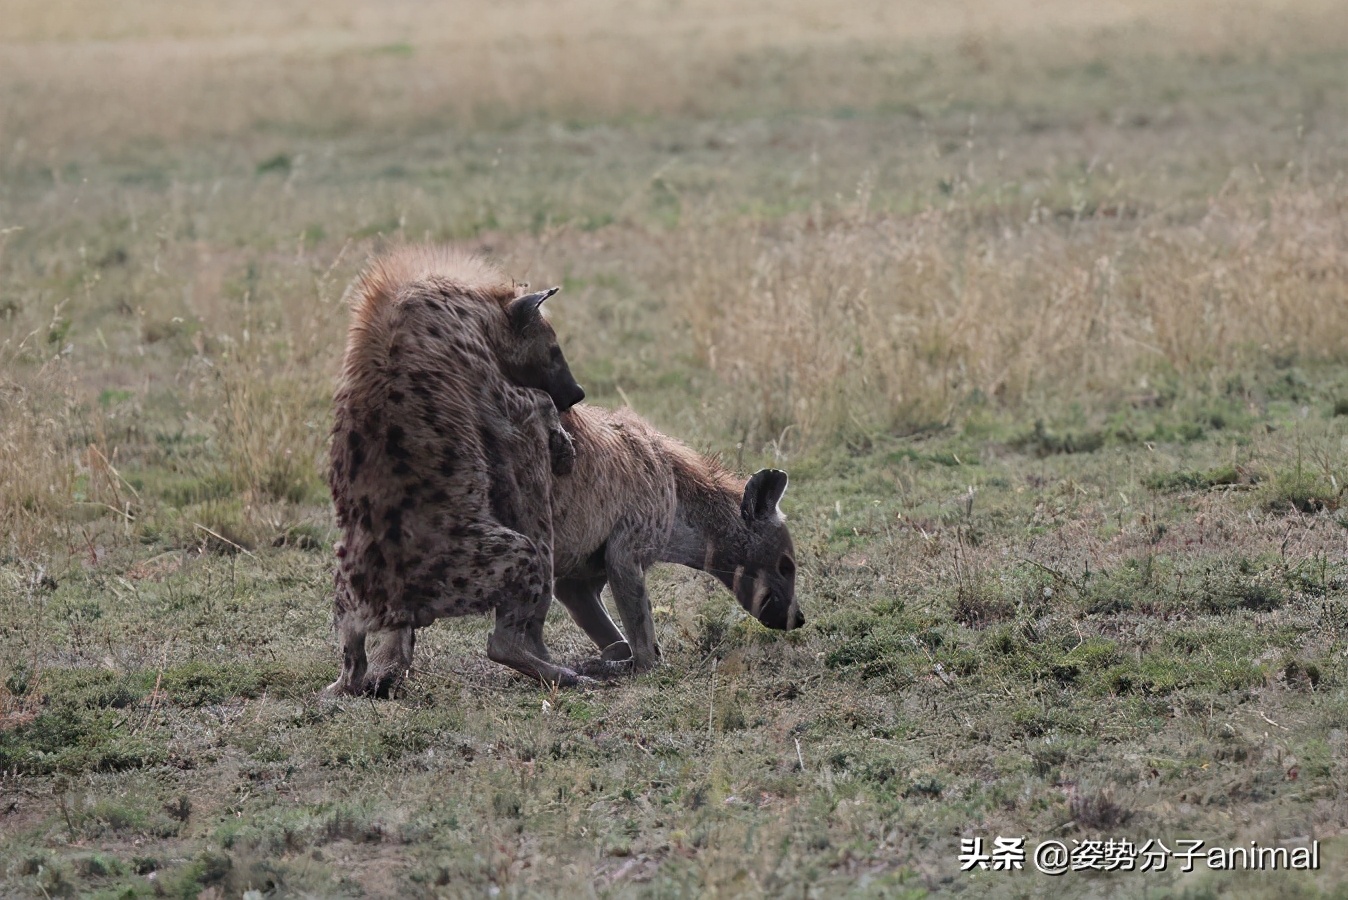 斑鬣狗的交配繁衍,奇怪的知识又增加了